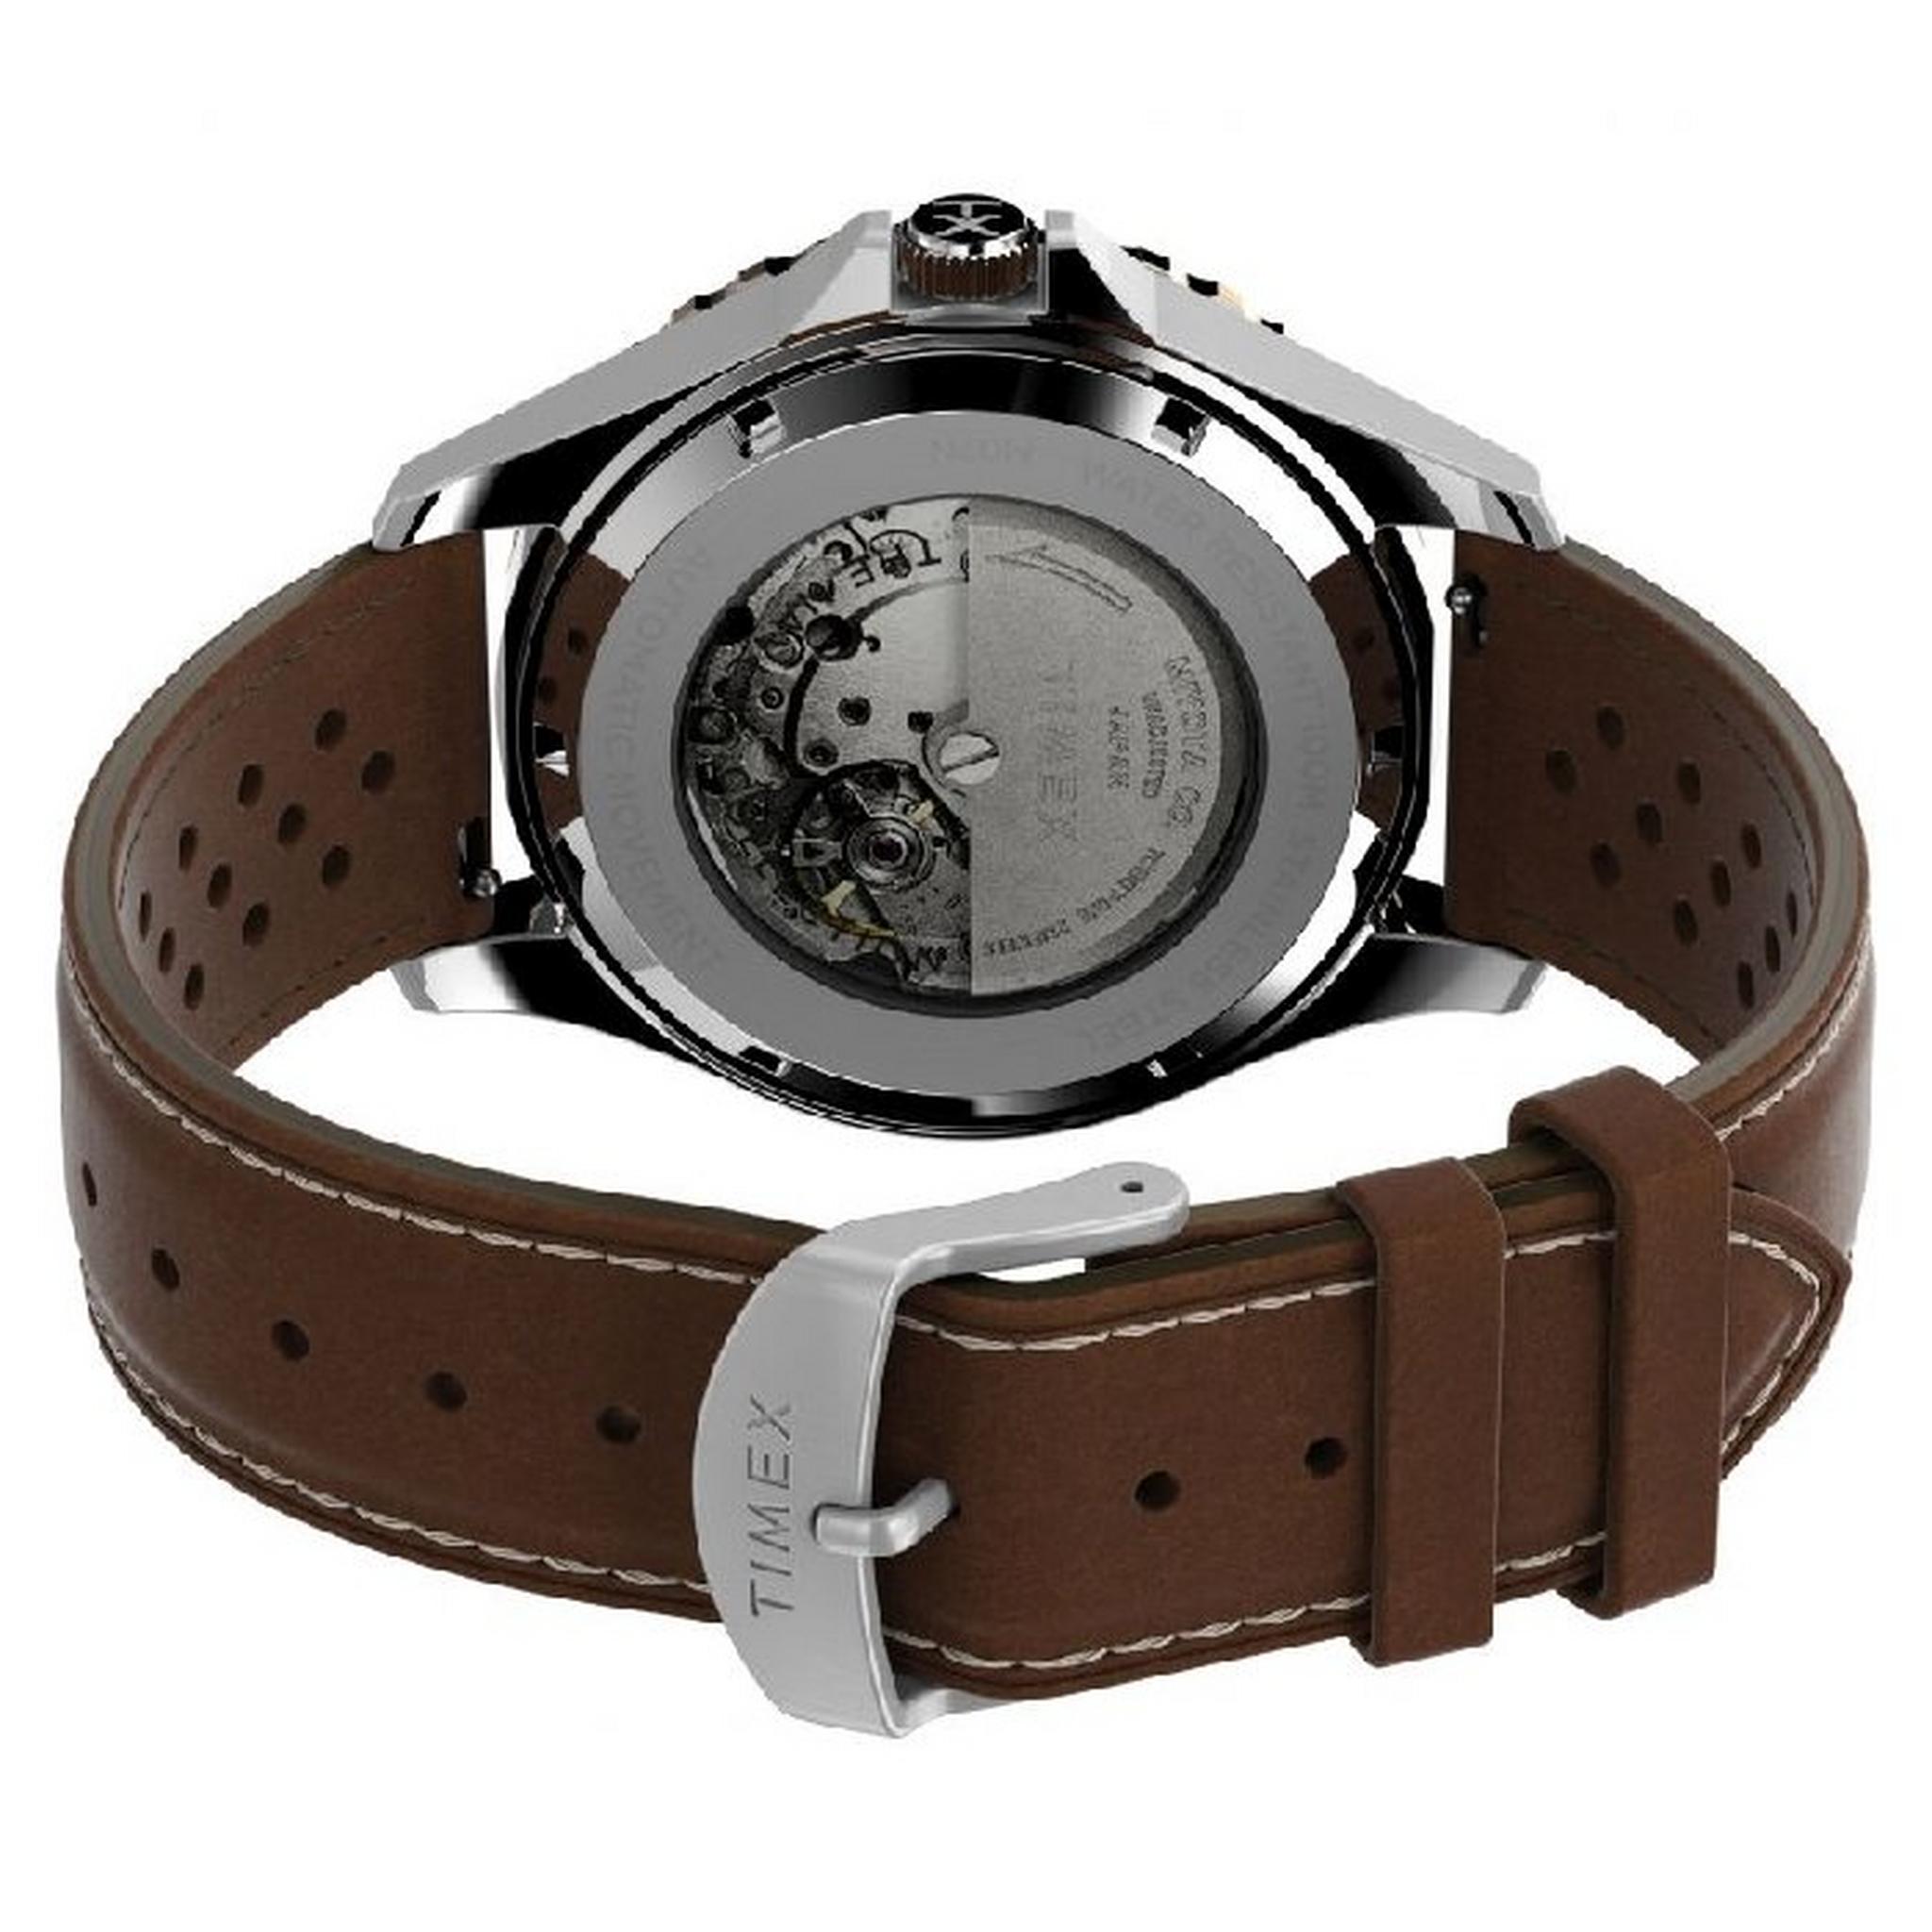 ساعة ميليرتي من تيميكس للرجال، اوتوماتيك، 41 مم، سوار جلد، TW2V41500 - بني